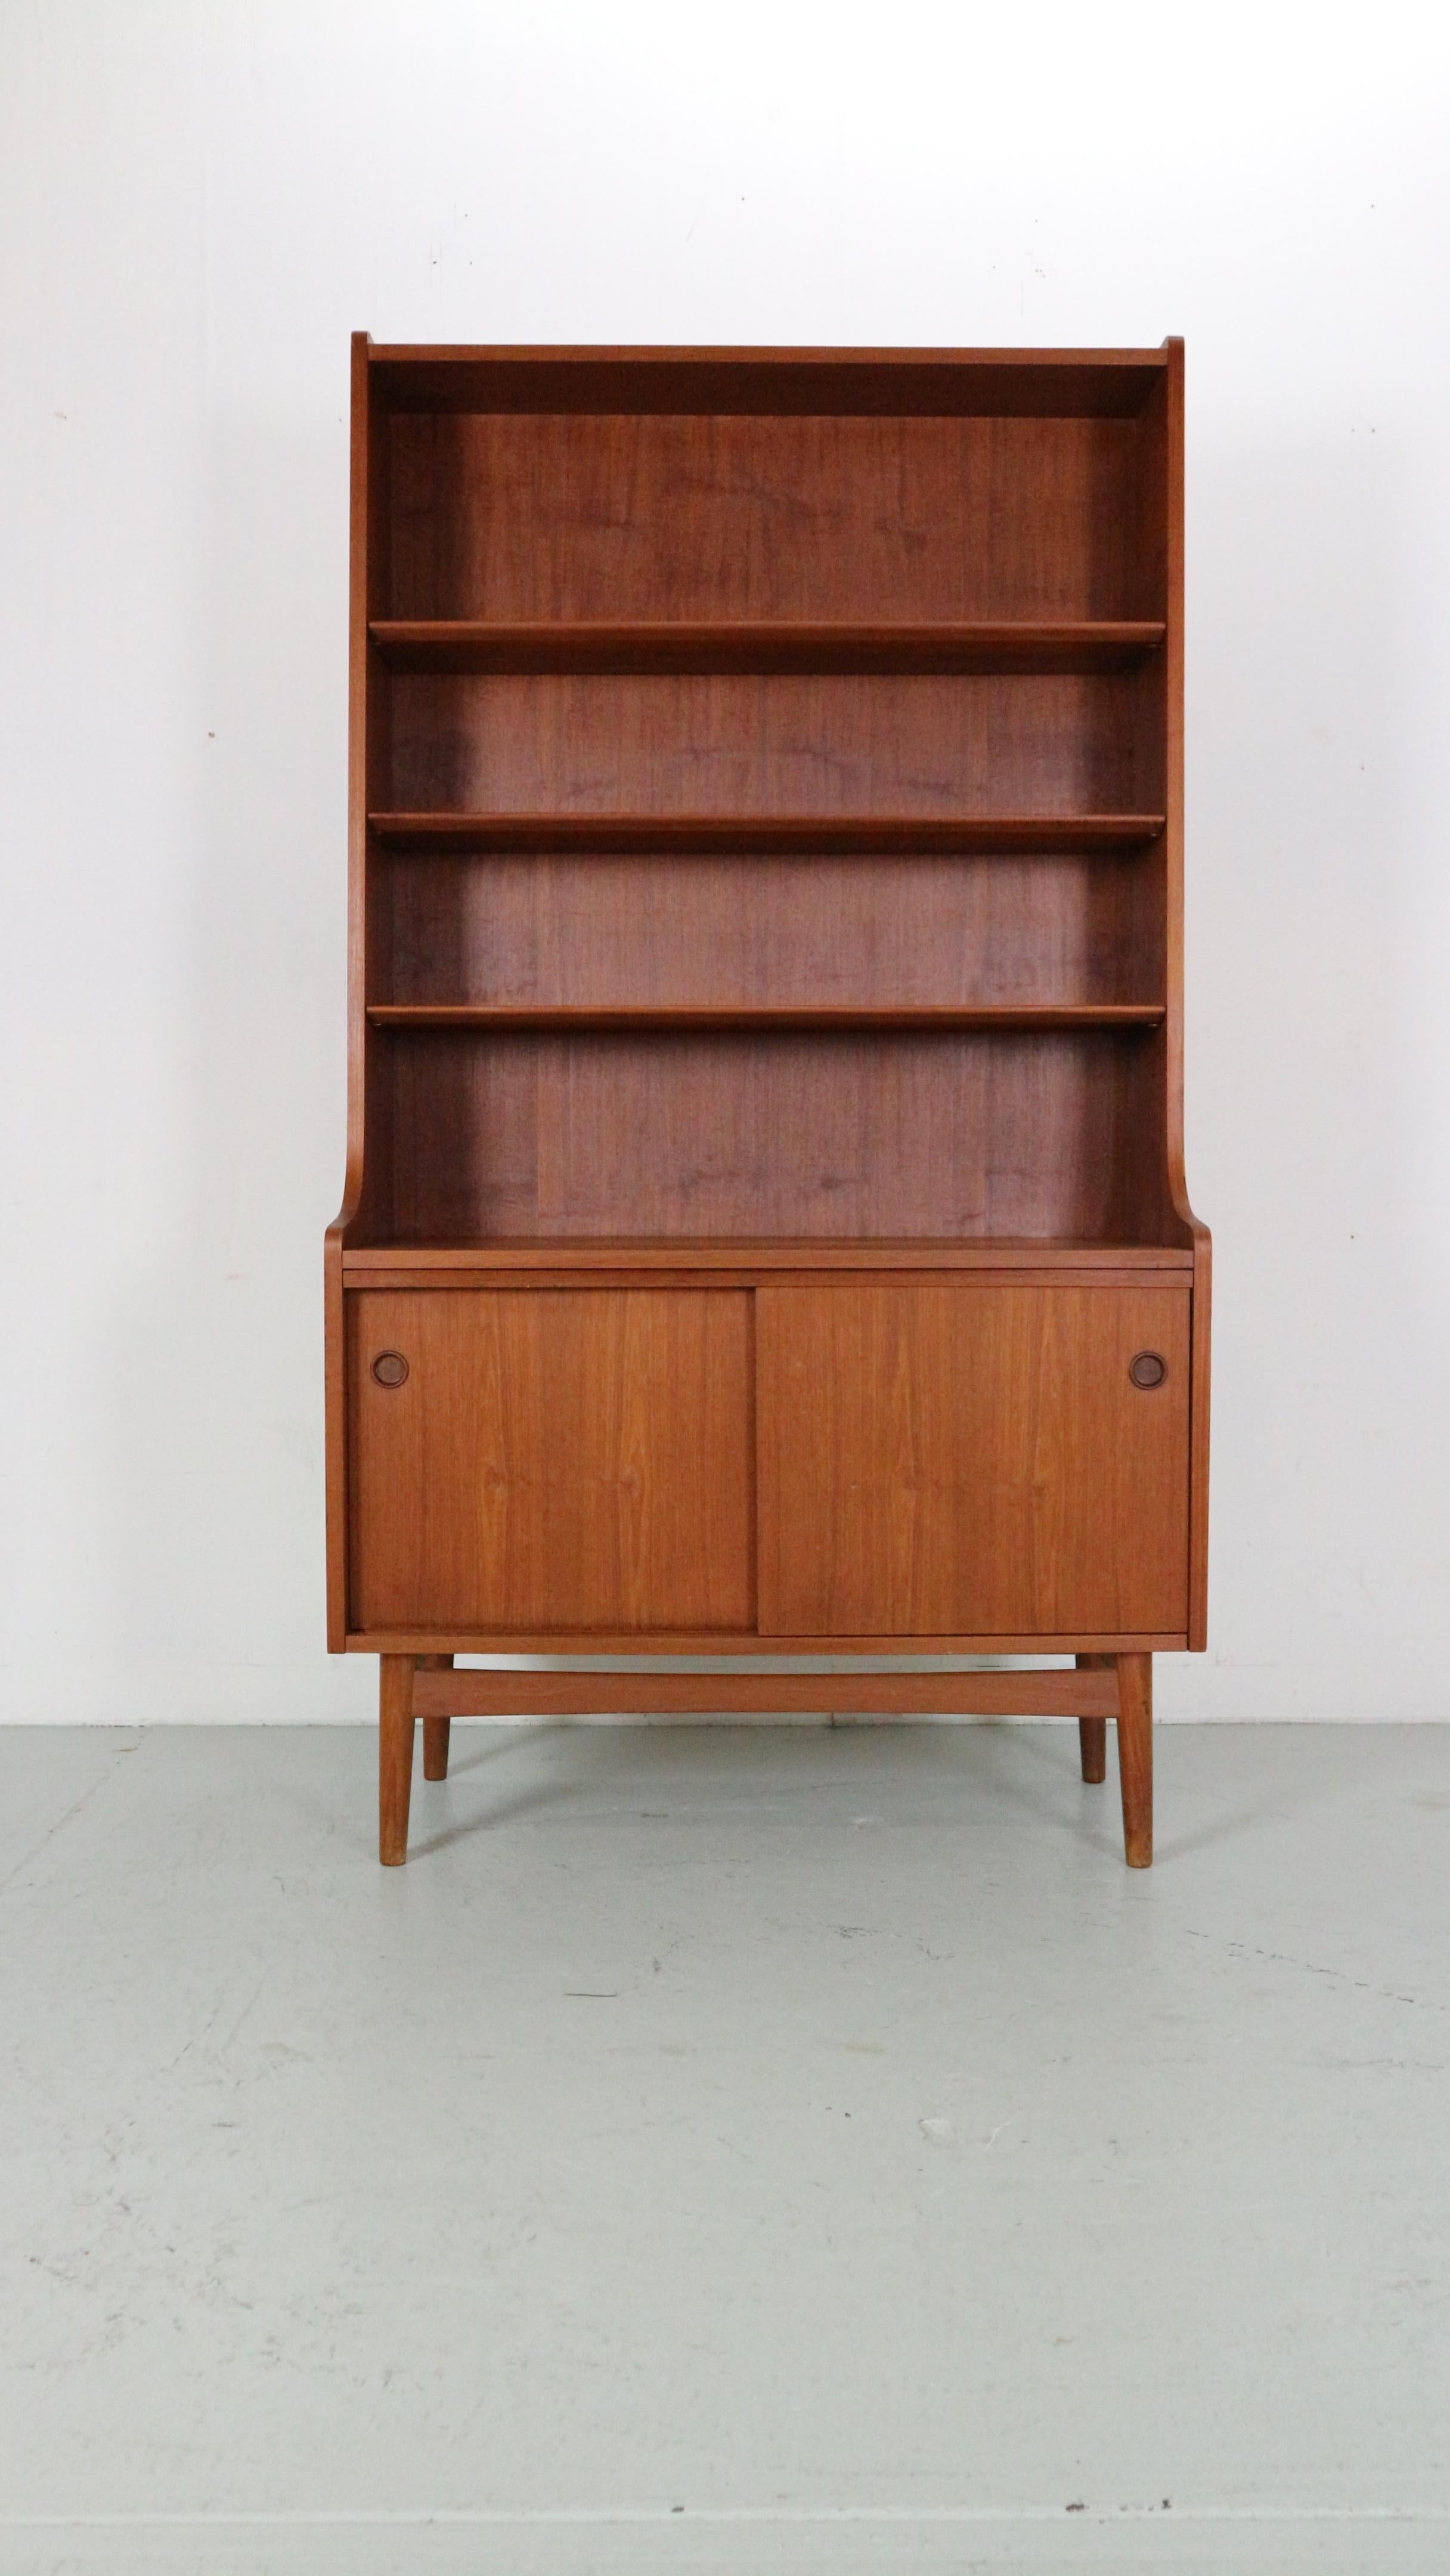 Dieses klassische skandinavische Bücherregal wurde 1956 vom dänischen Tischlermeister Johannes Sorth für die Nexø Møbelfabrik in Bornholm entworfen.

Die IDEA war eine Kombination aus einem Schrank und einem Bücherregal, und sie war sofort ein